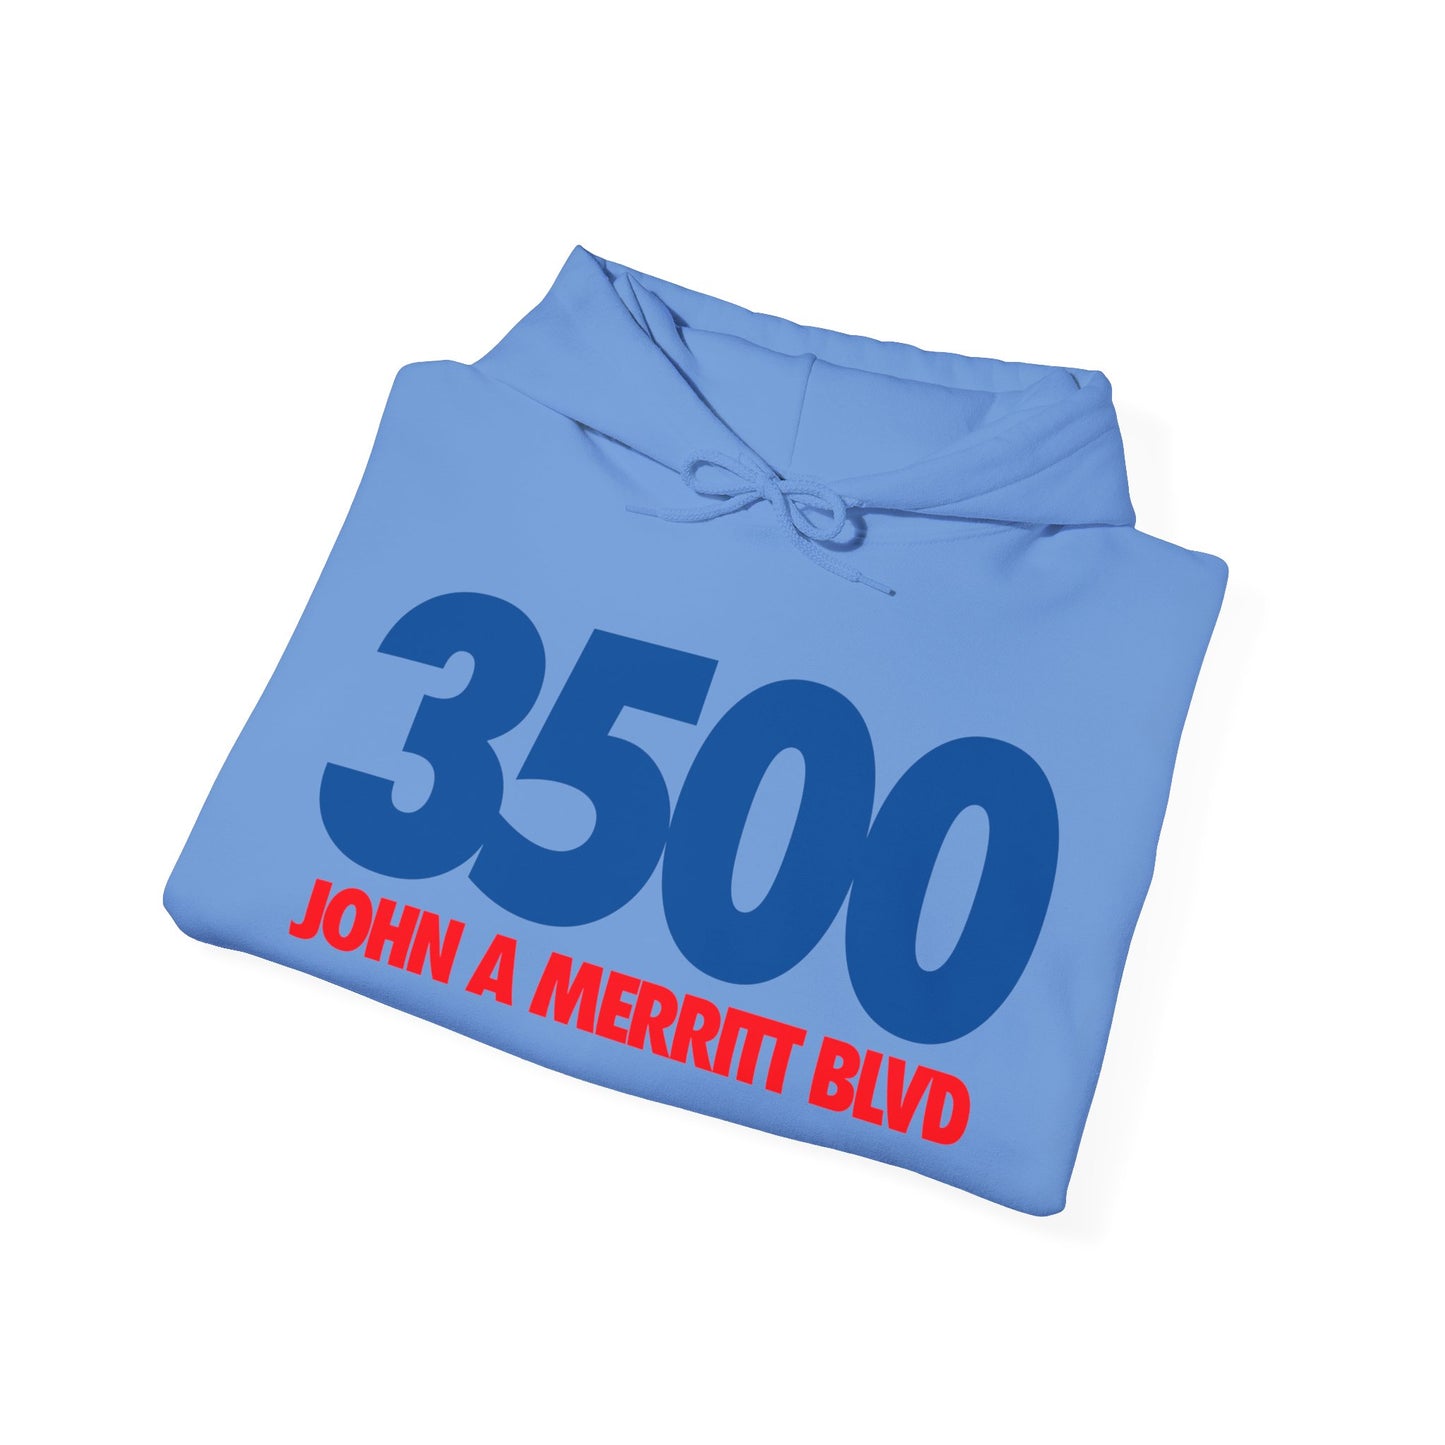 3500 John A. Merritt Blvd. (TSU)